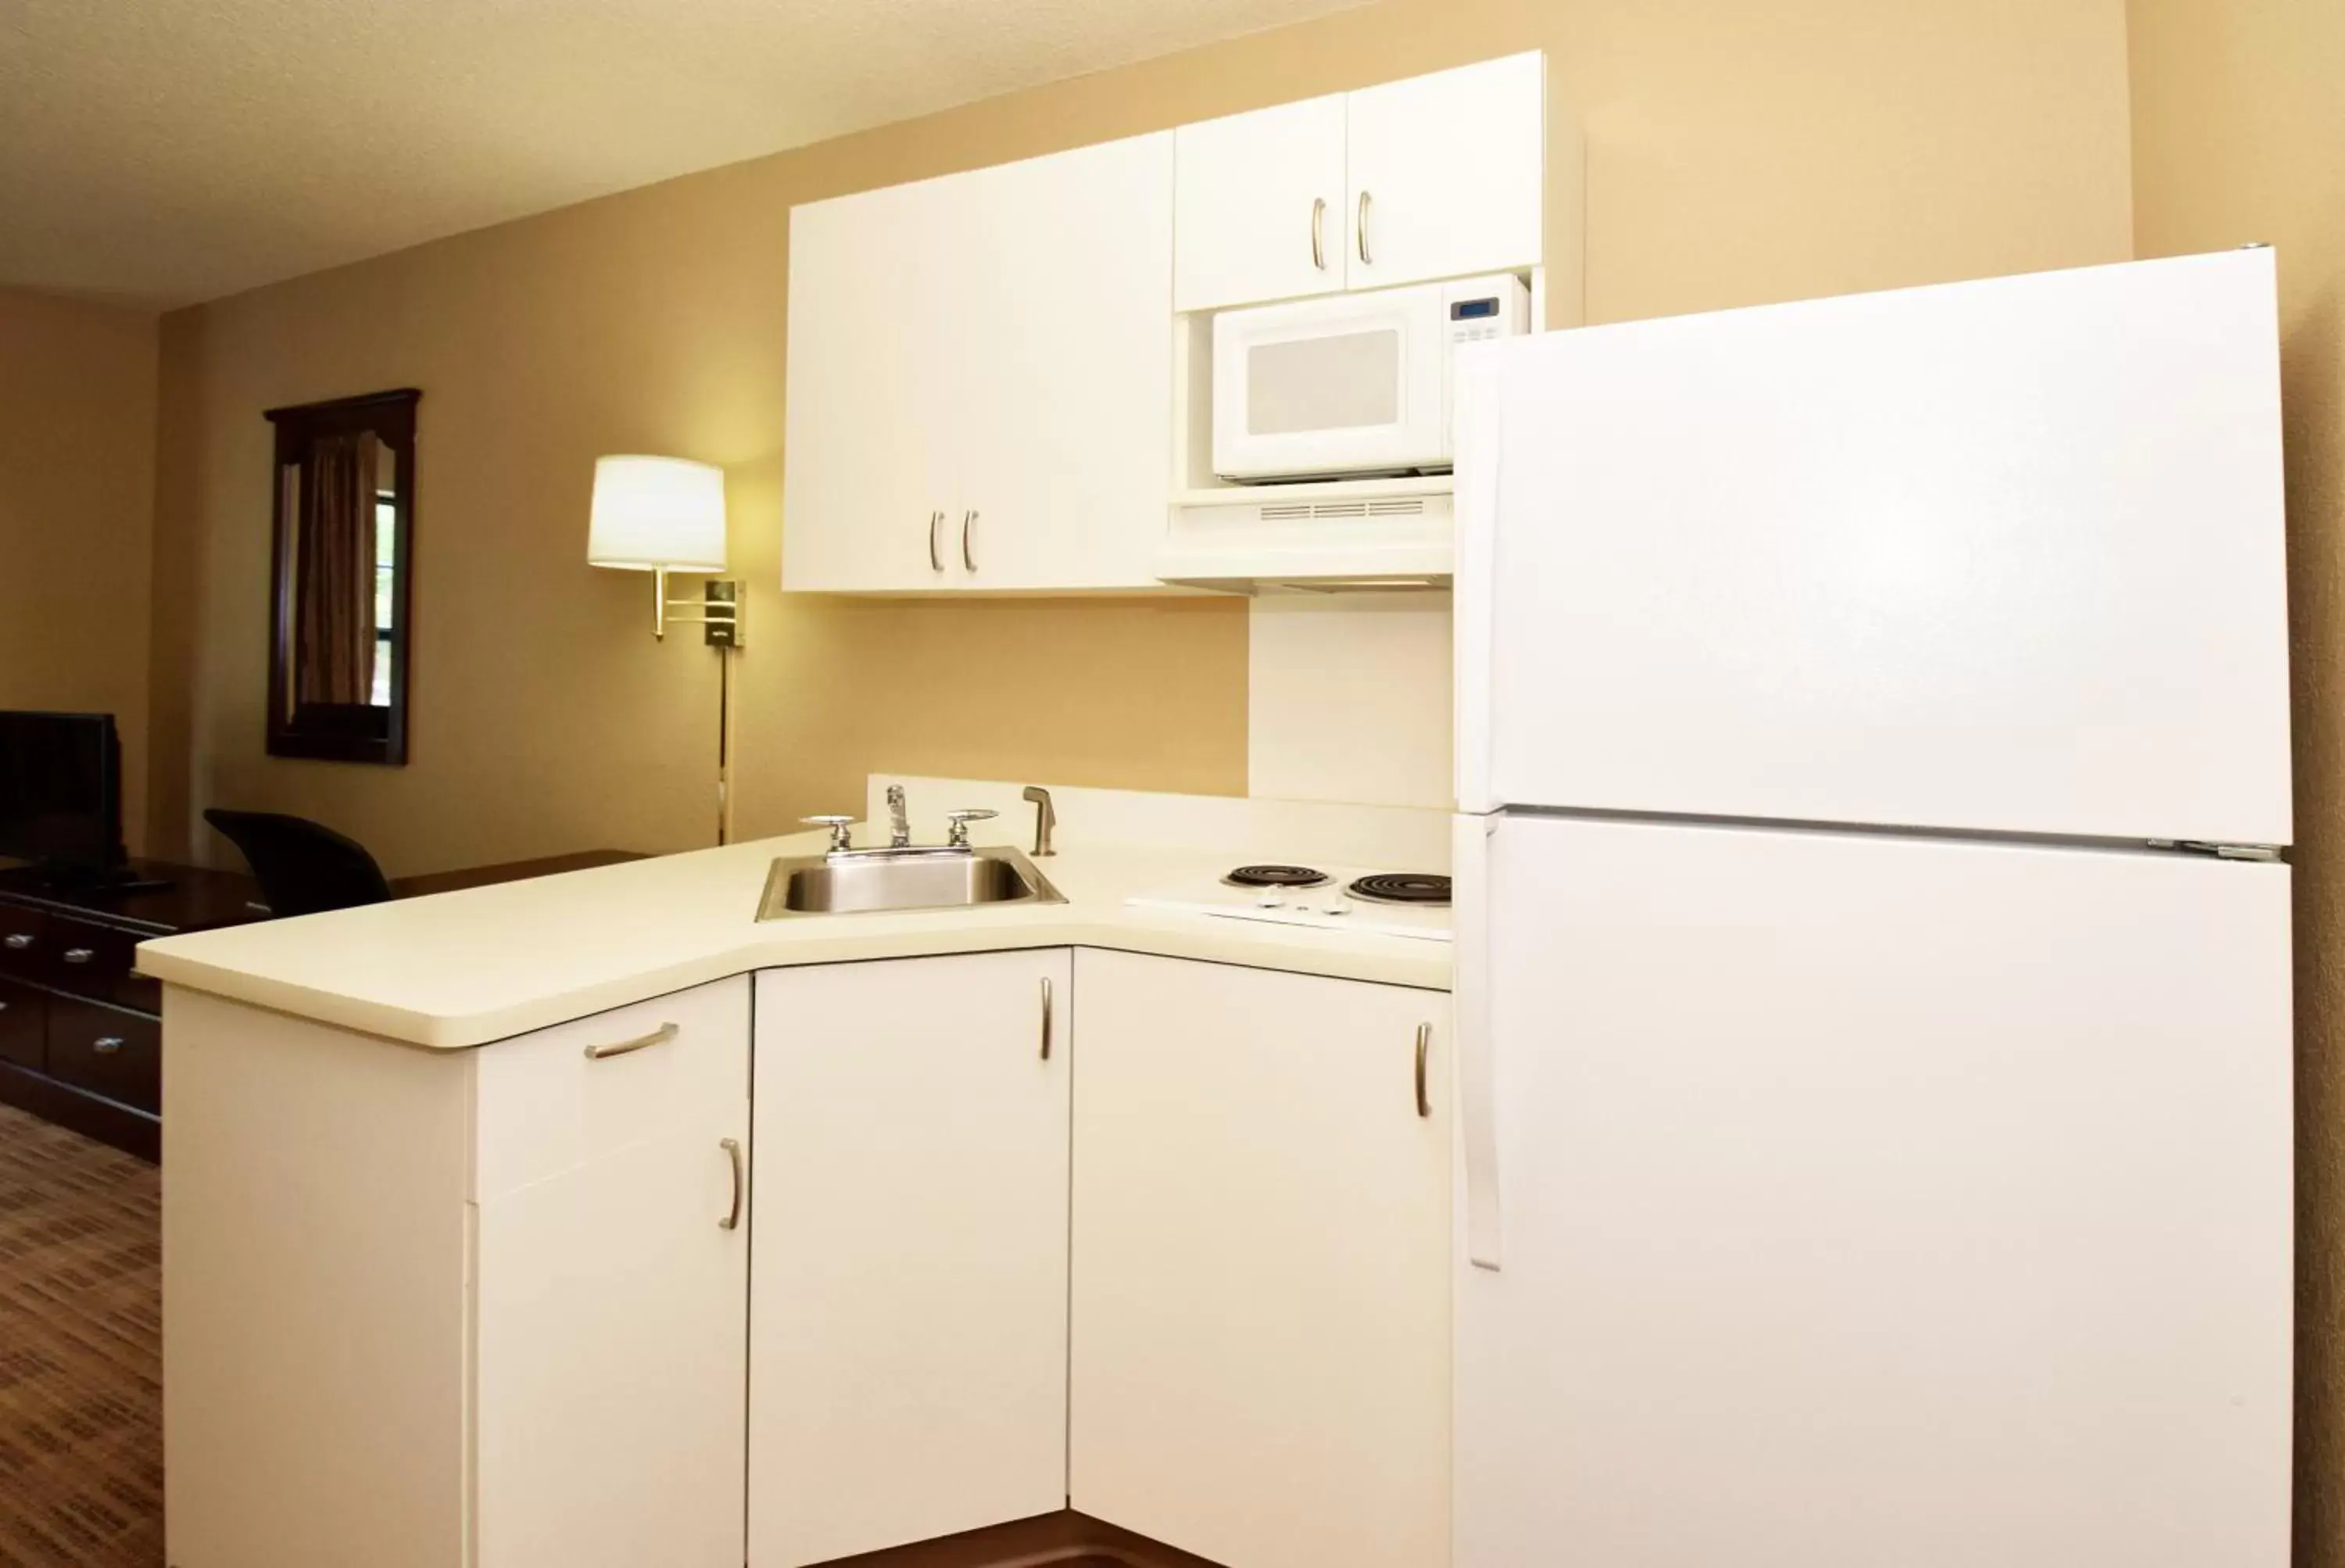 Kitchen or kitchenette, Kitchen/Kitchenette in Extended Stay America Suites - Cincinnati - Covington